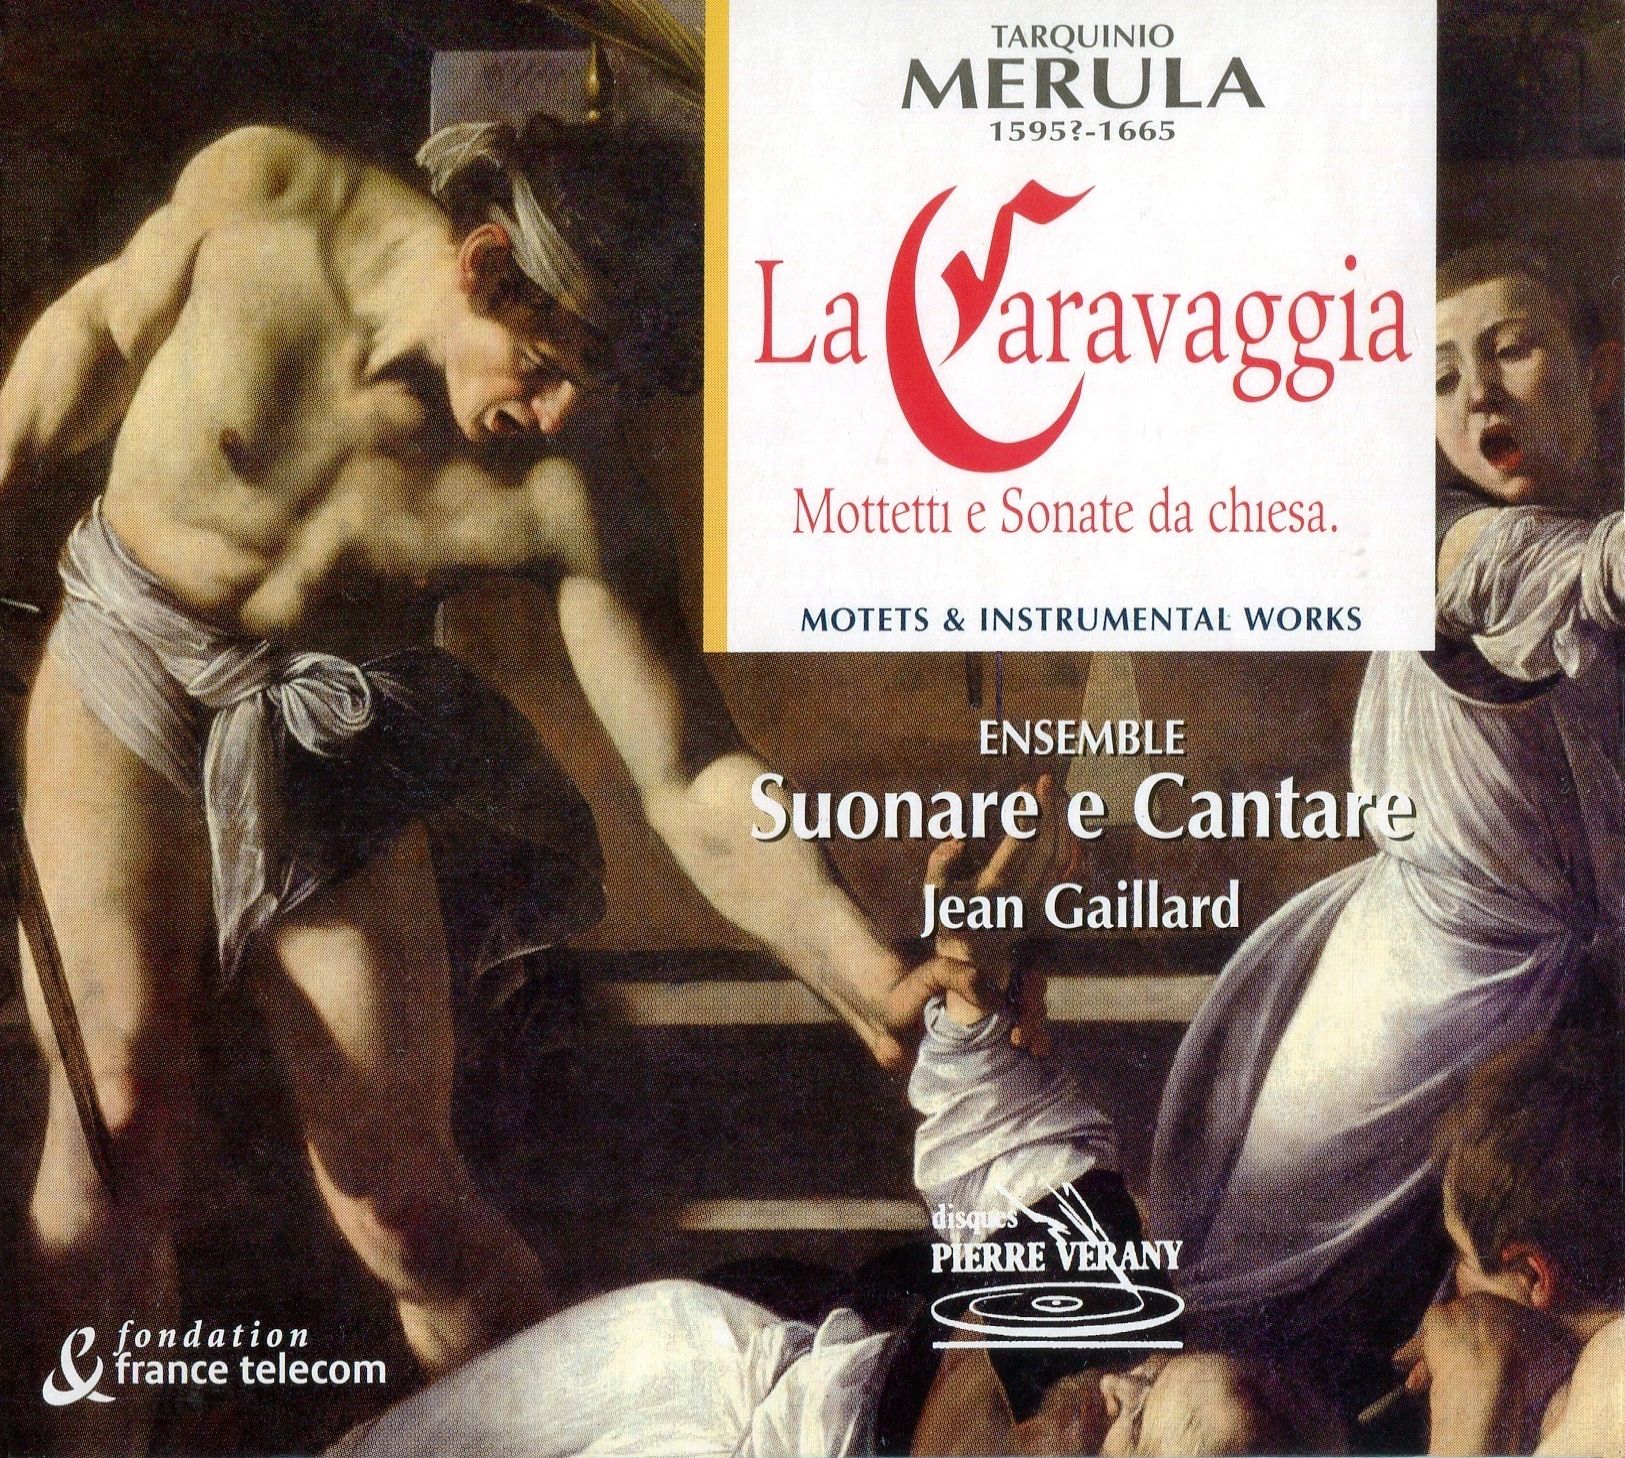 Merula, Tarquinio - La Caravaggia - Mottetti e Sonate da chiesa - Ens. Suonare e Cantare